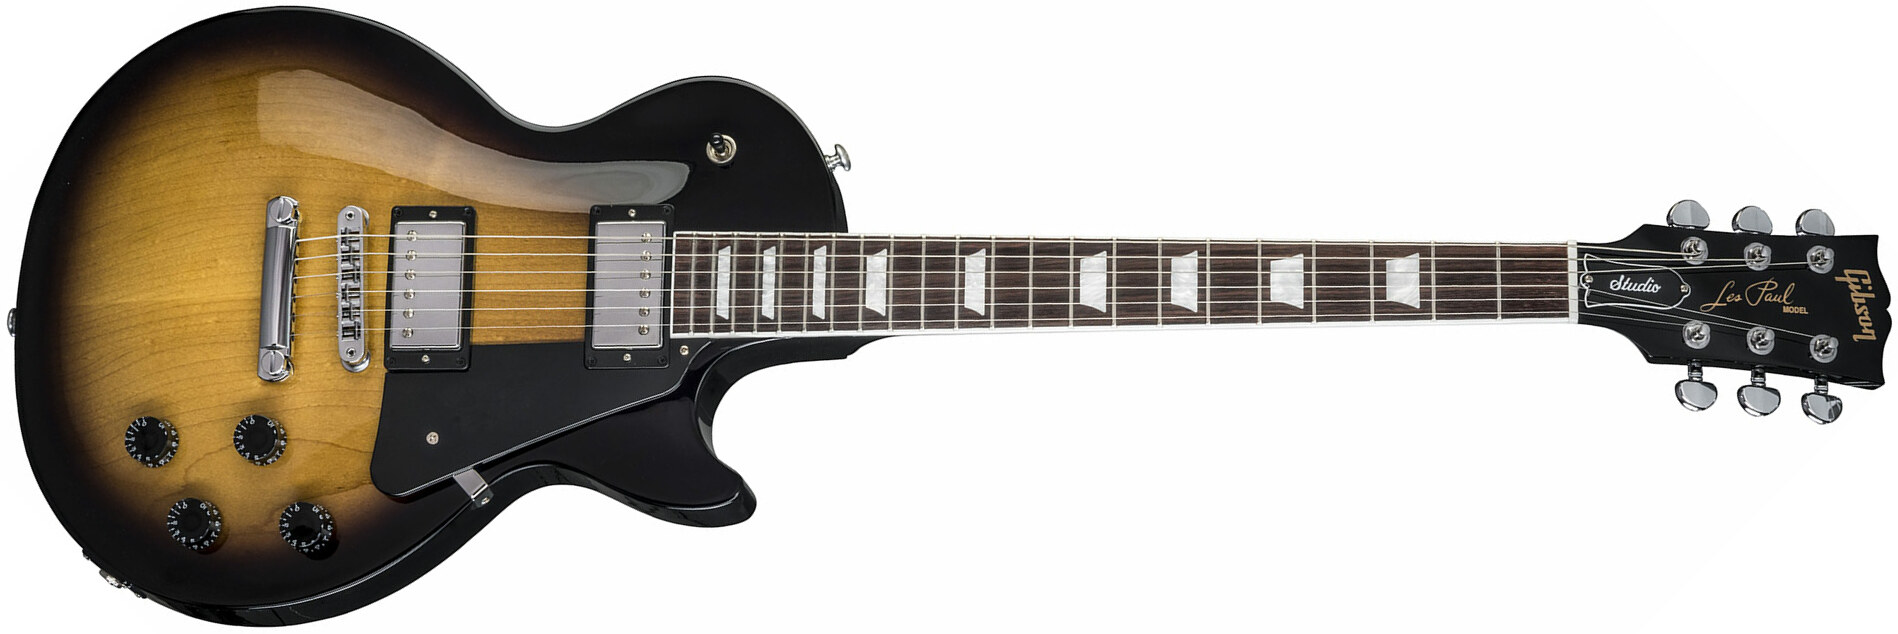 Gibson Les Paul Studio 2018 - Vintage Sunburst - Single cut electric guitar - Main picture